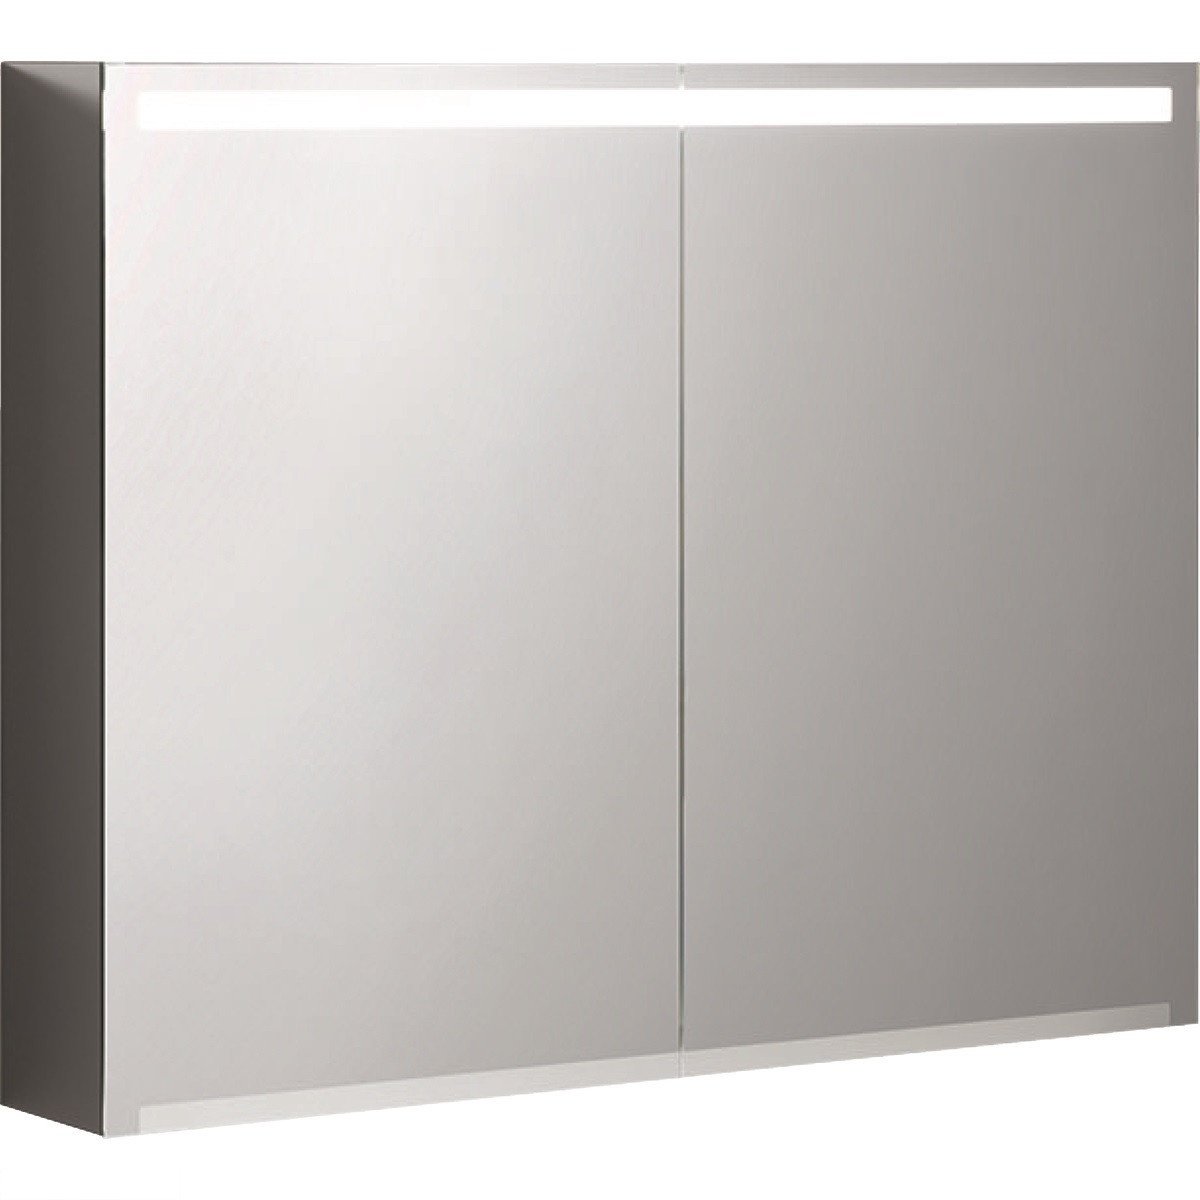 Зеркальный шкафчик 90 см, Geberit Option с подсветкой, с двумя дверцами: корпус зеркальный, дверцы зеркальные снаружи и внутри 500.583.00.1